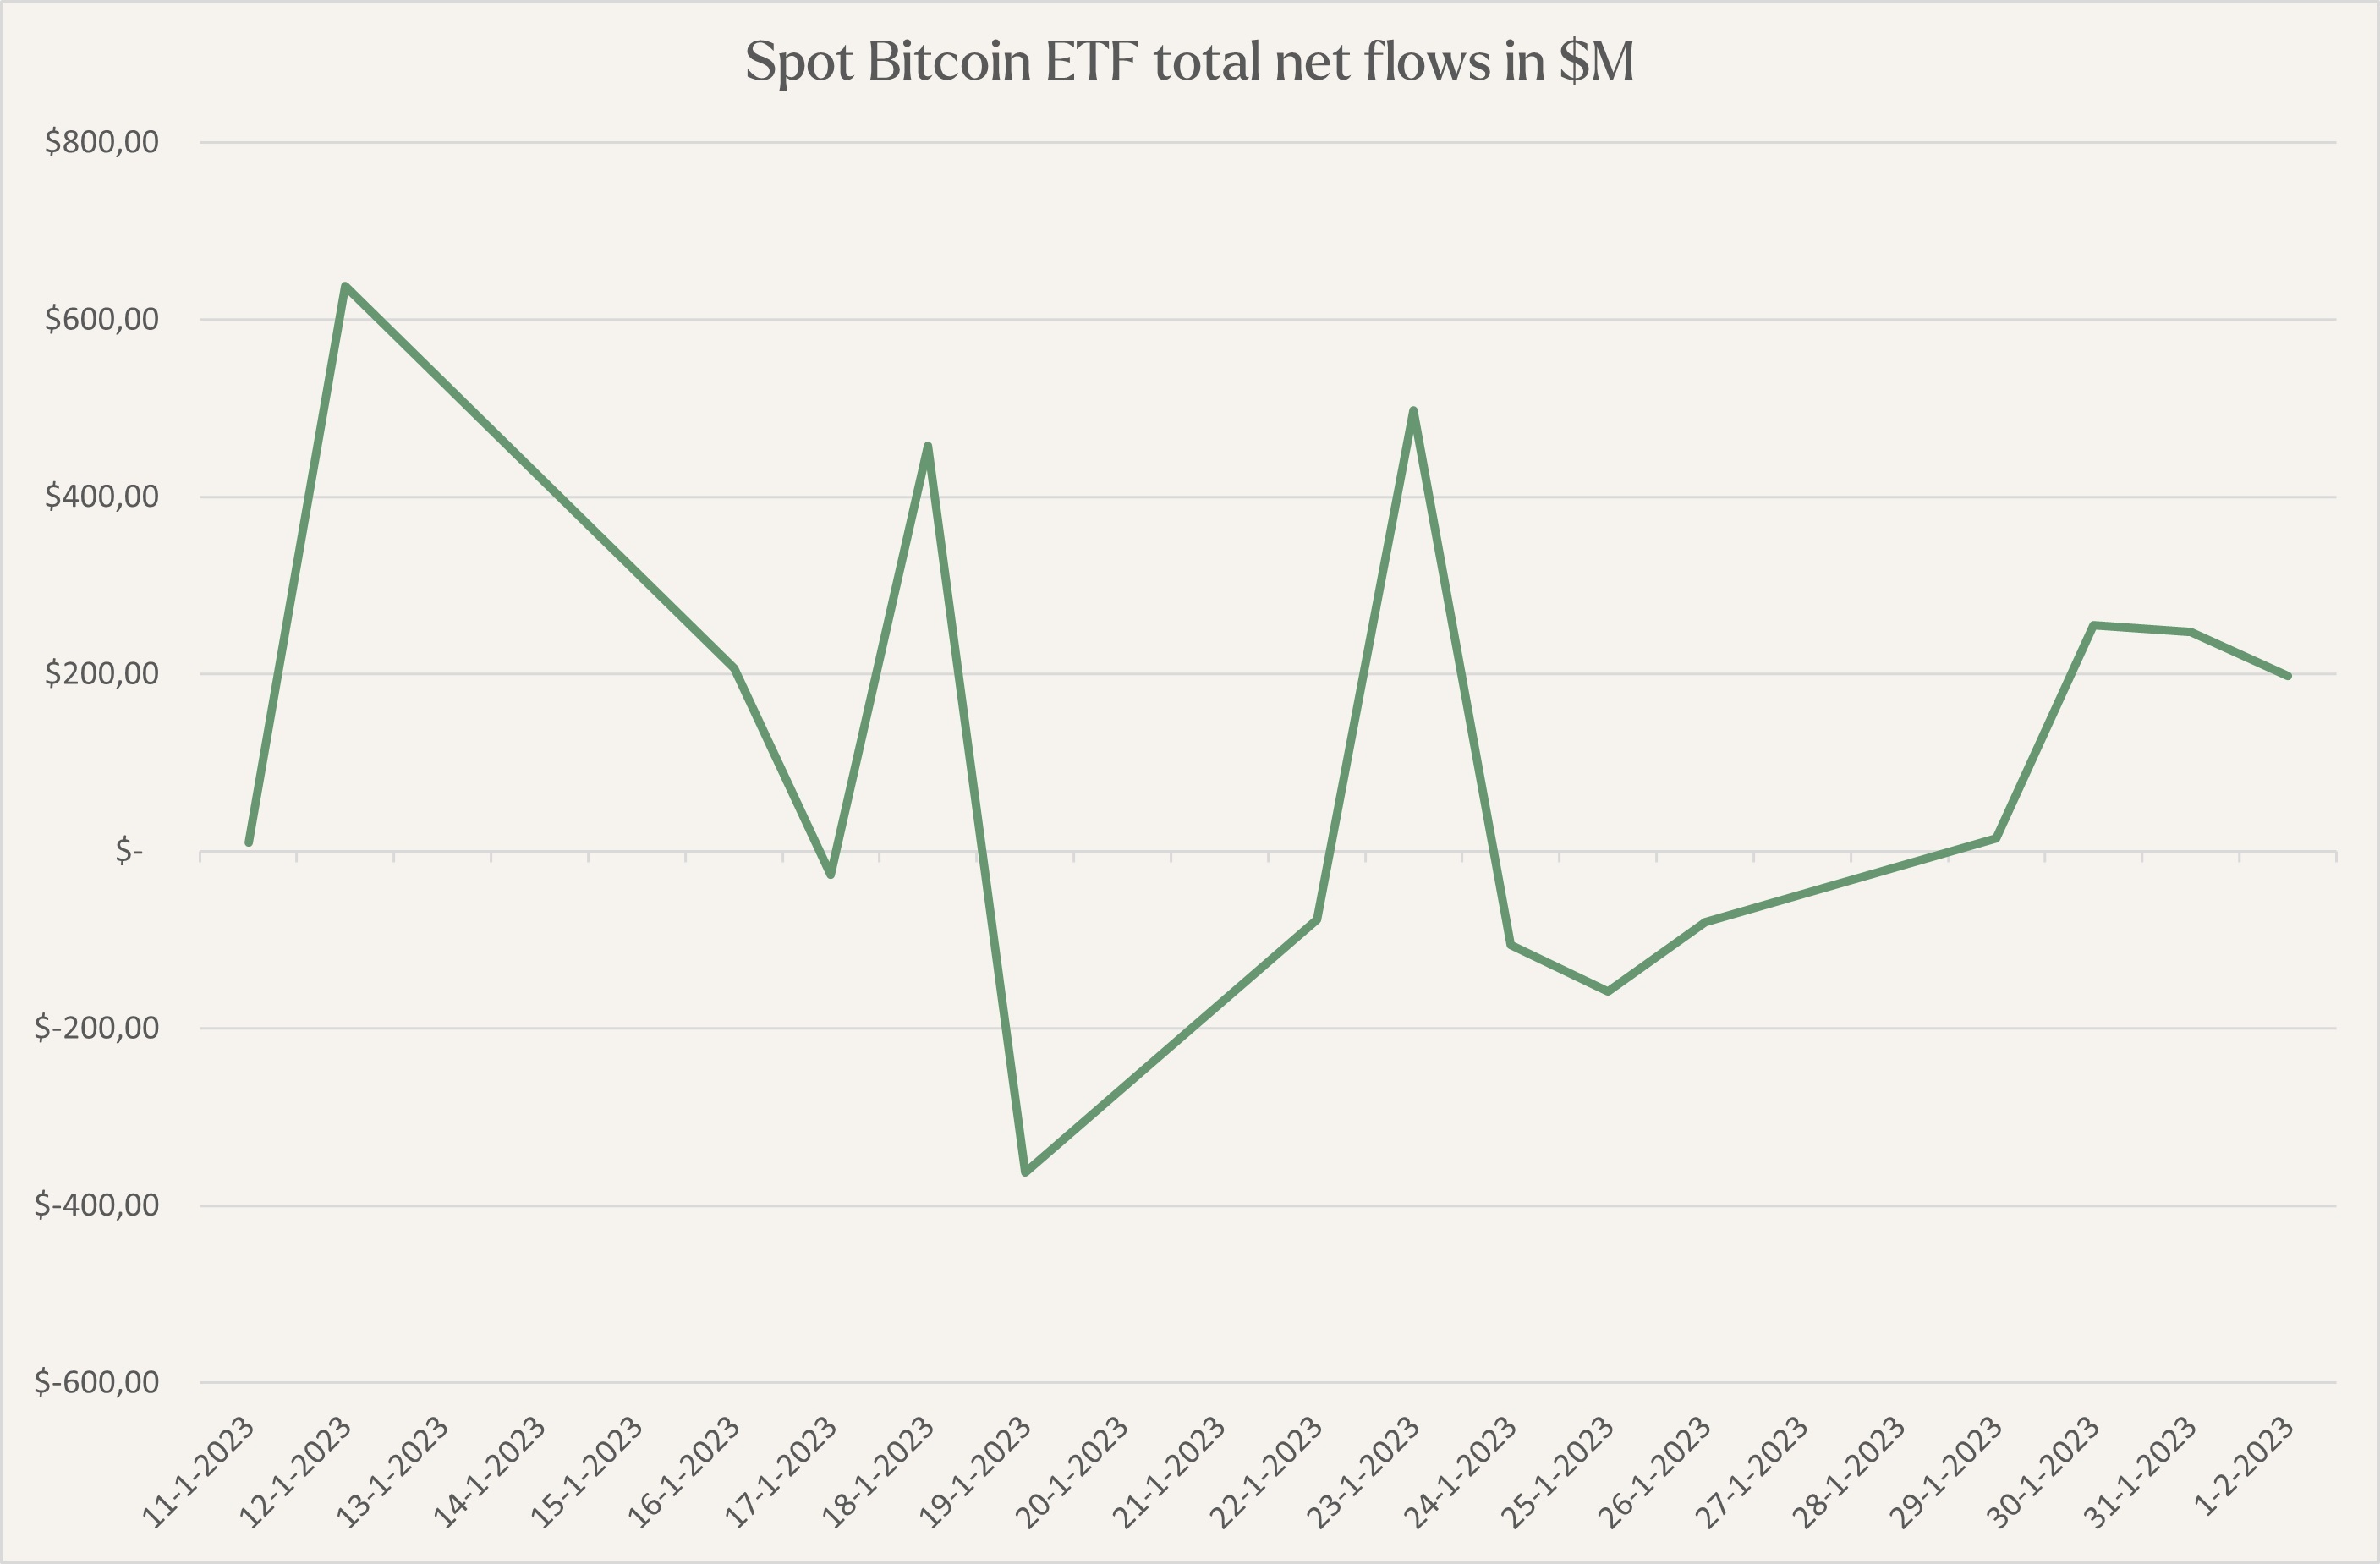 Spot Bitcoin ETF inflows in $